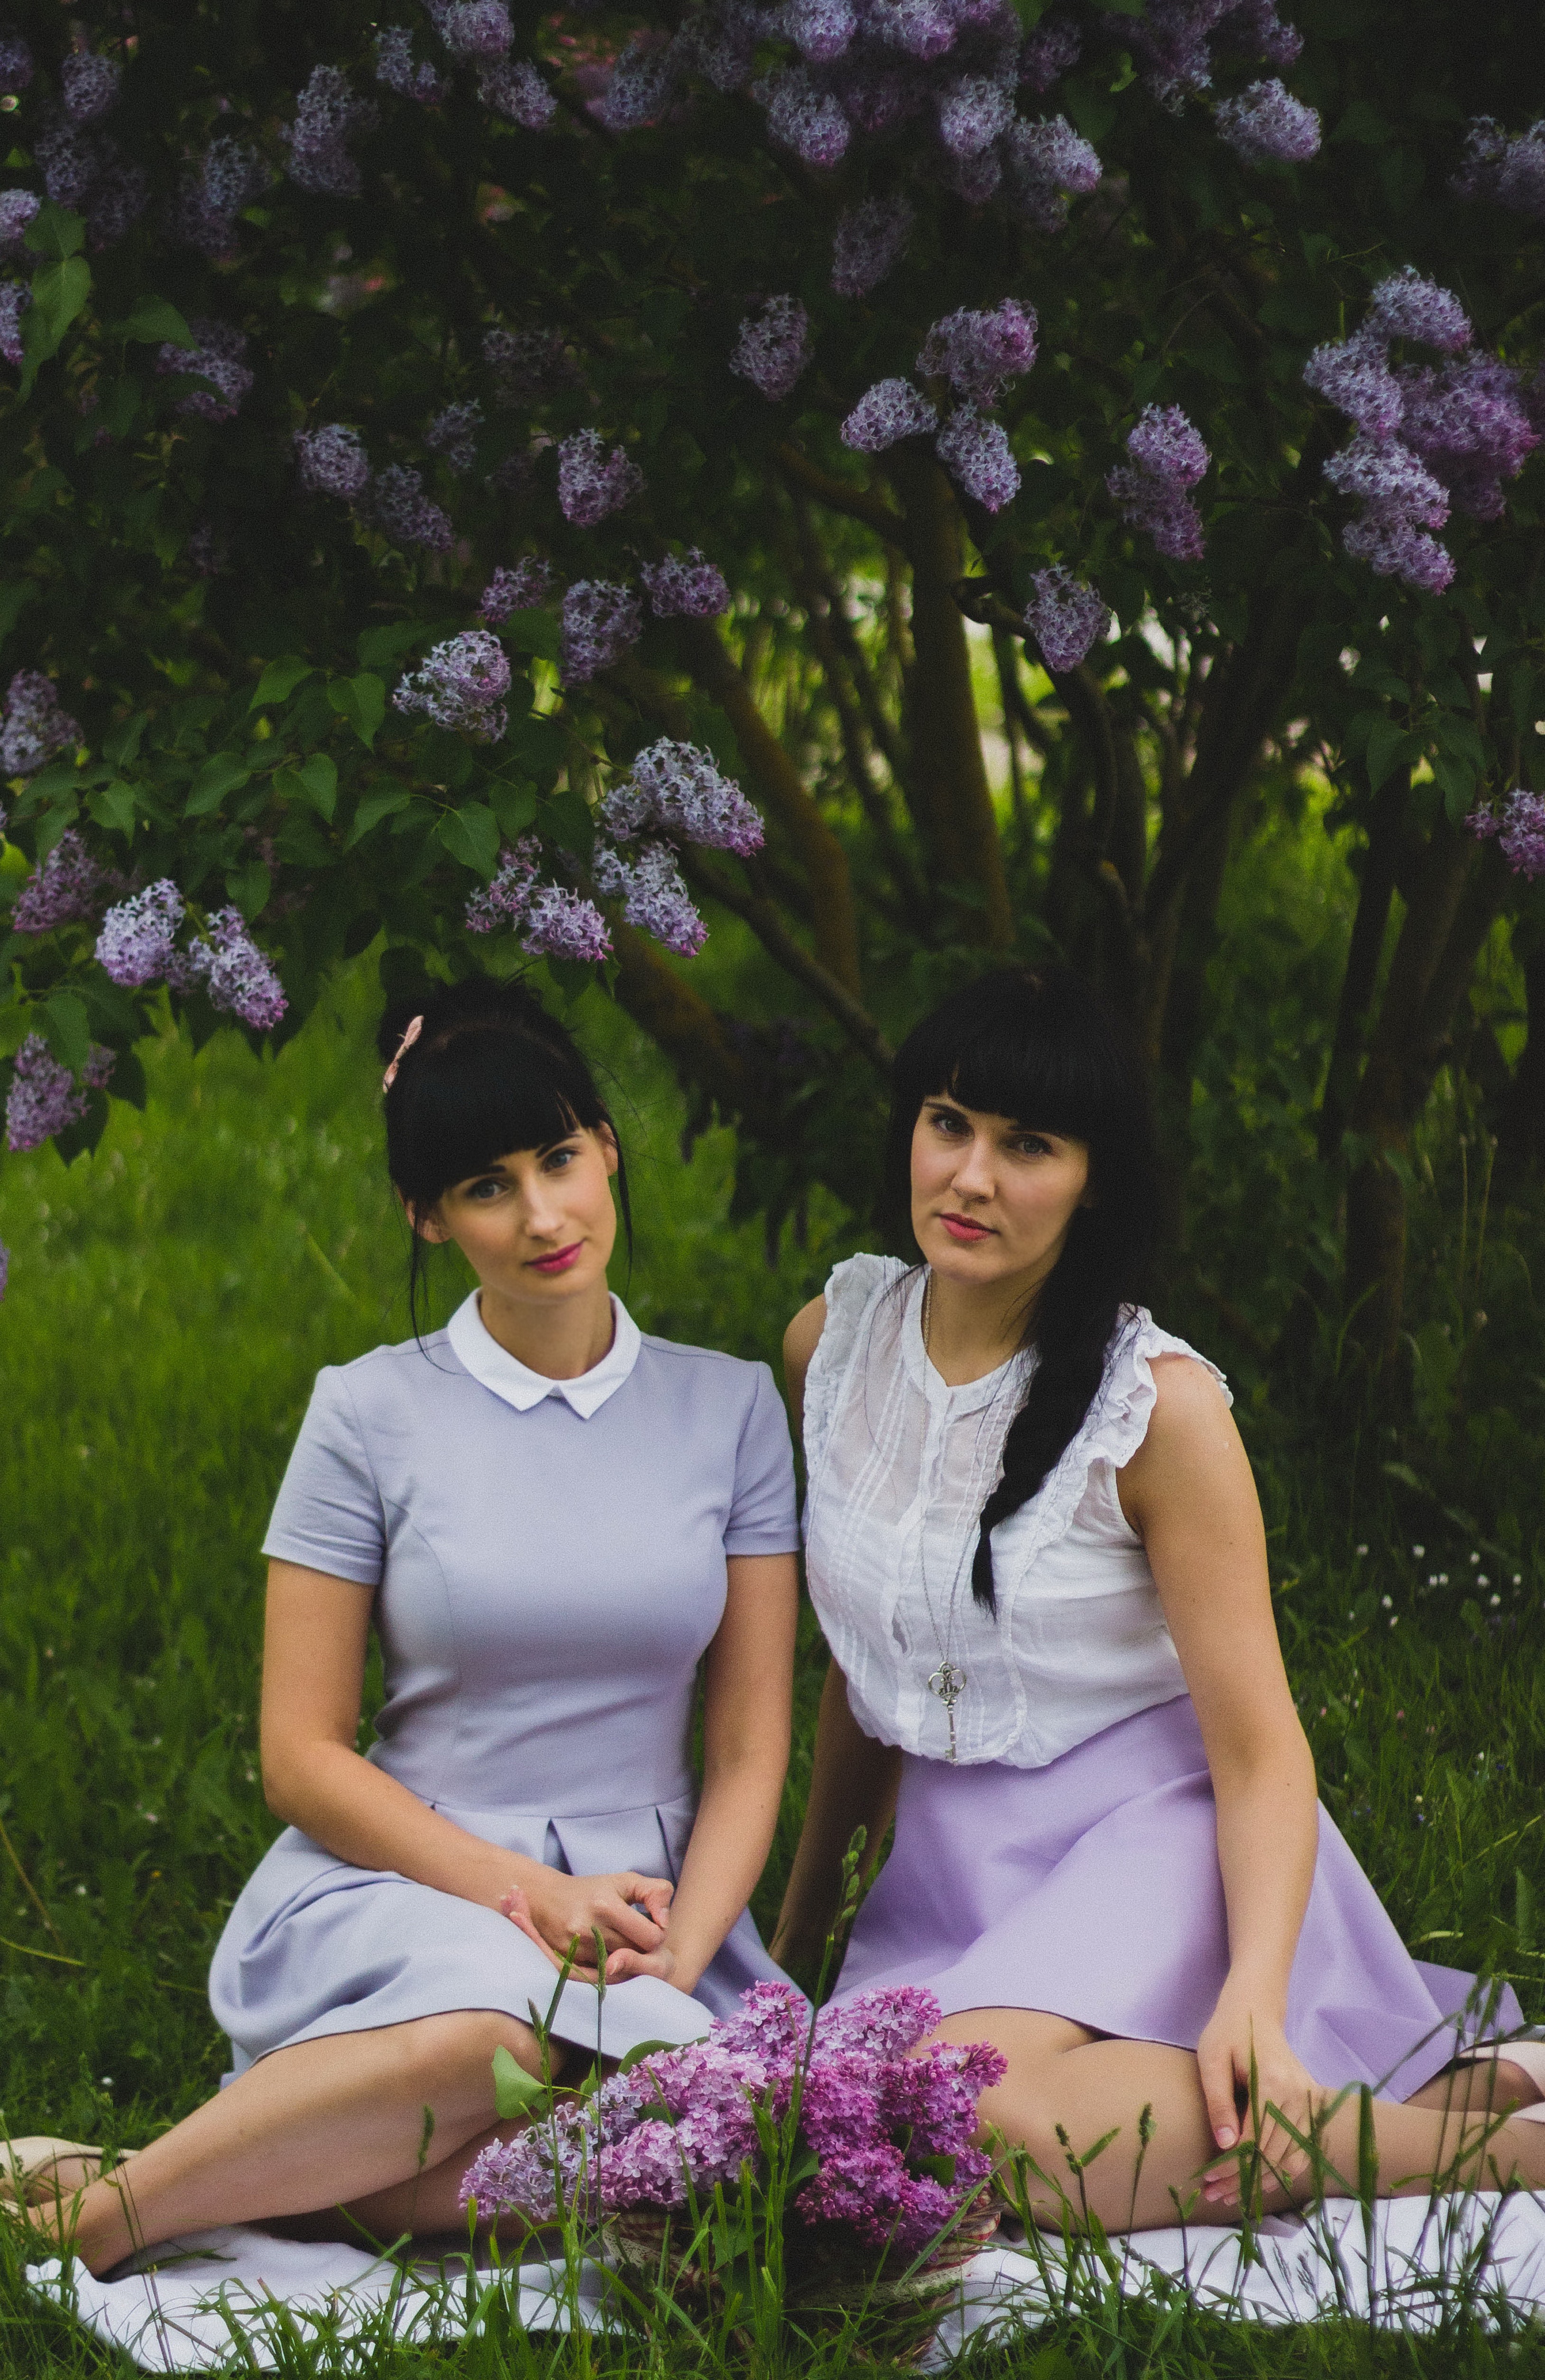 Two women wearing purple dress sitting side-by-side on grass field photo